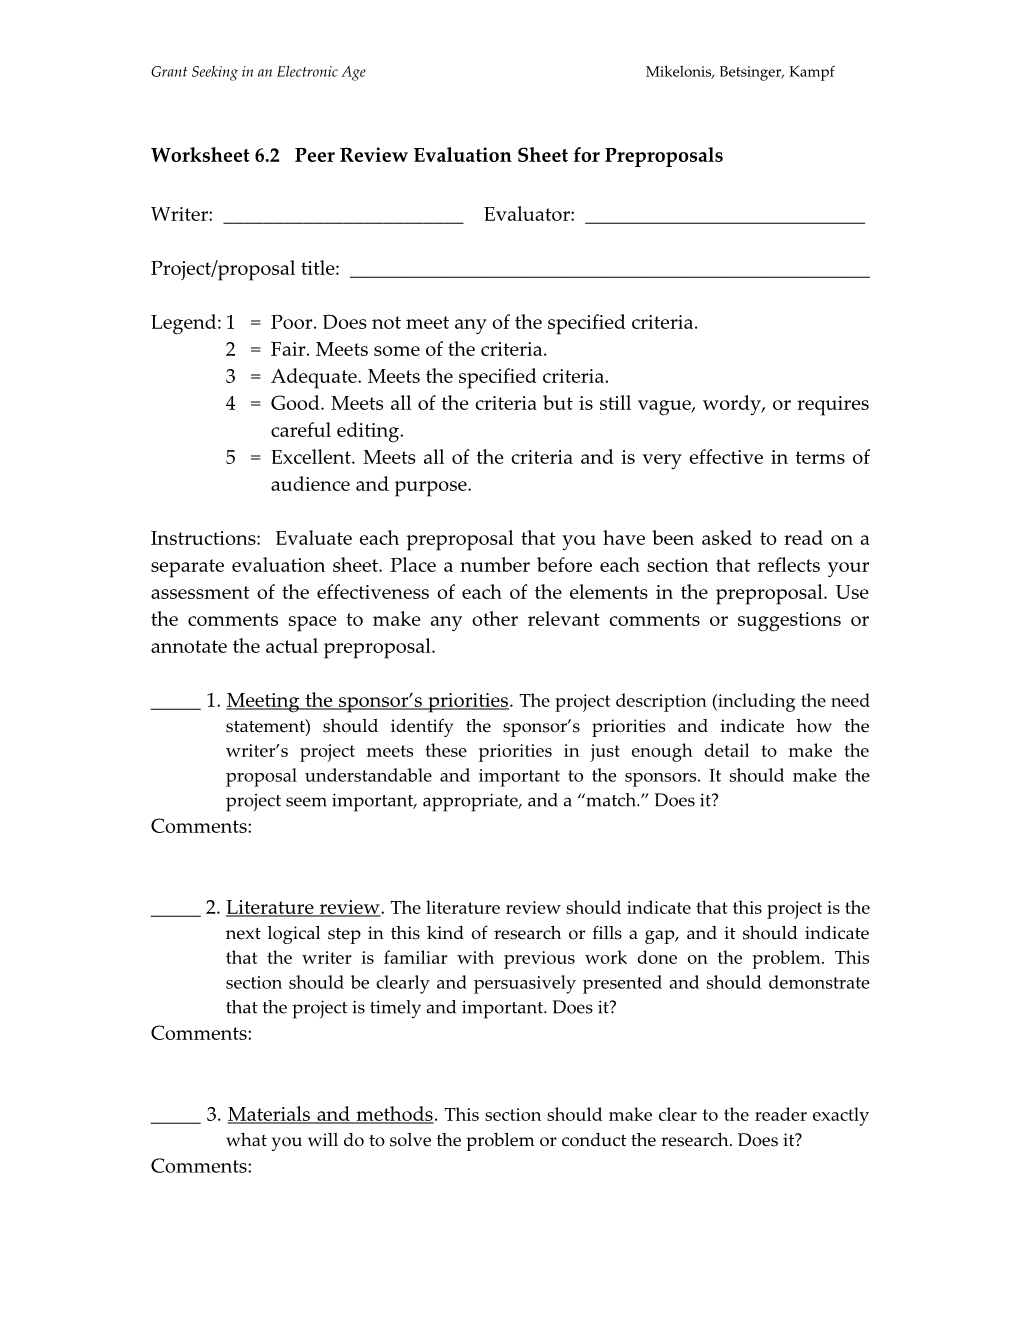 Worksheet 6.2 Peer Review Evaluation Sheet for Preproposals